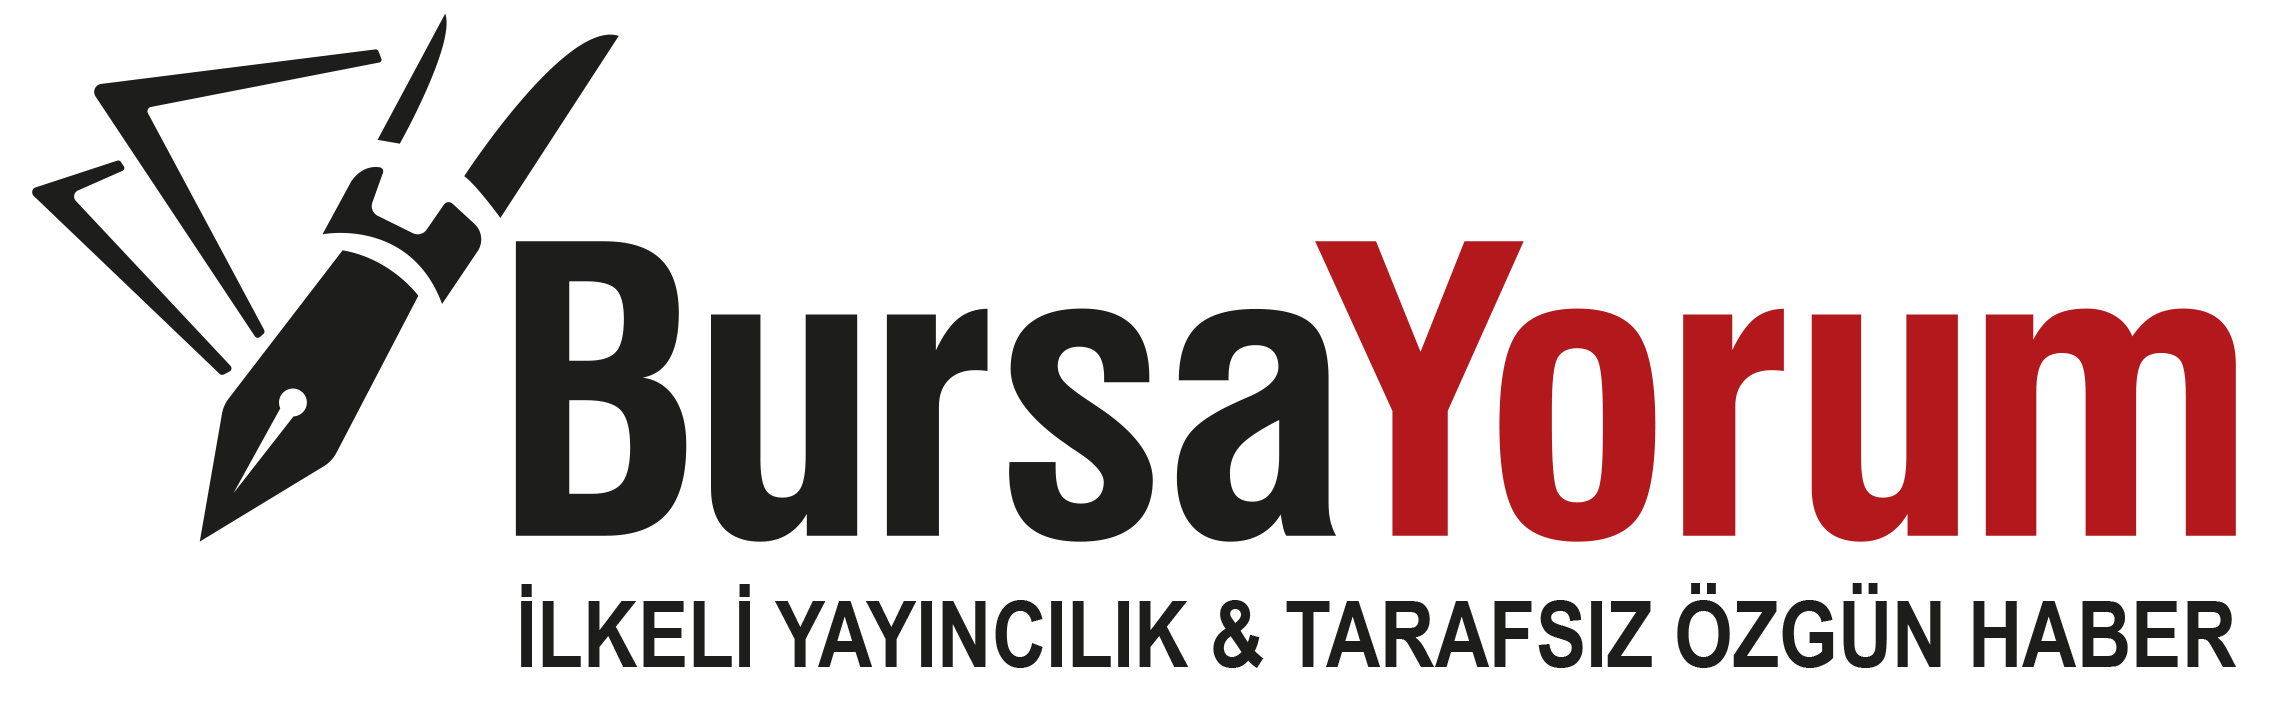 Bursa Yorum